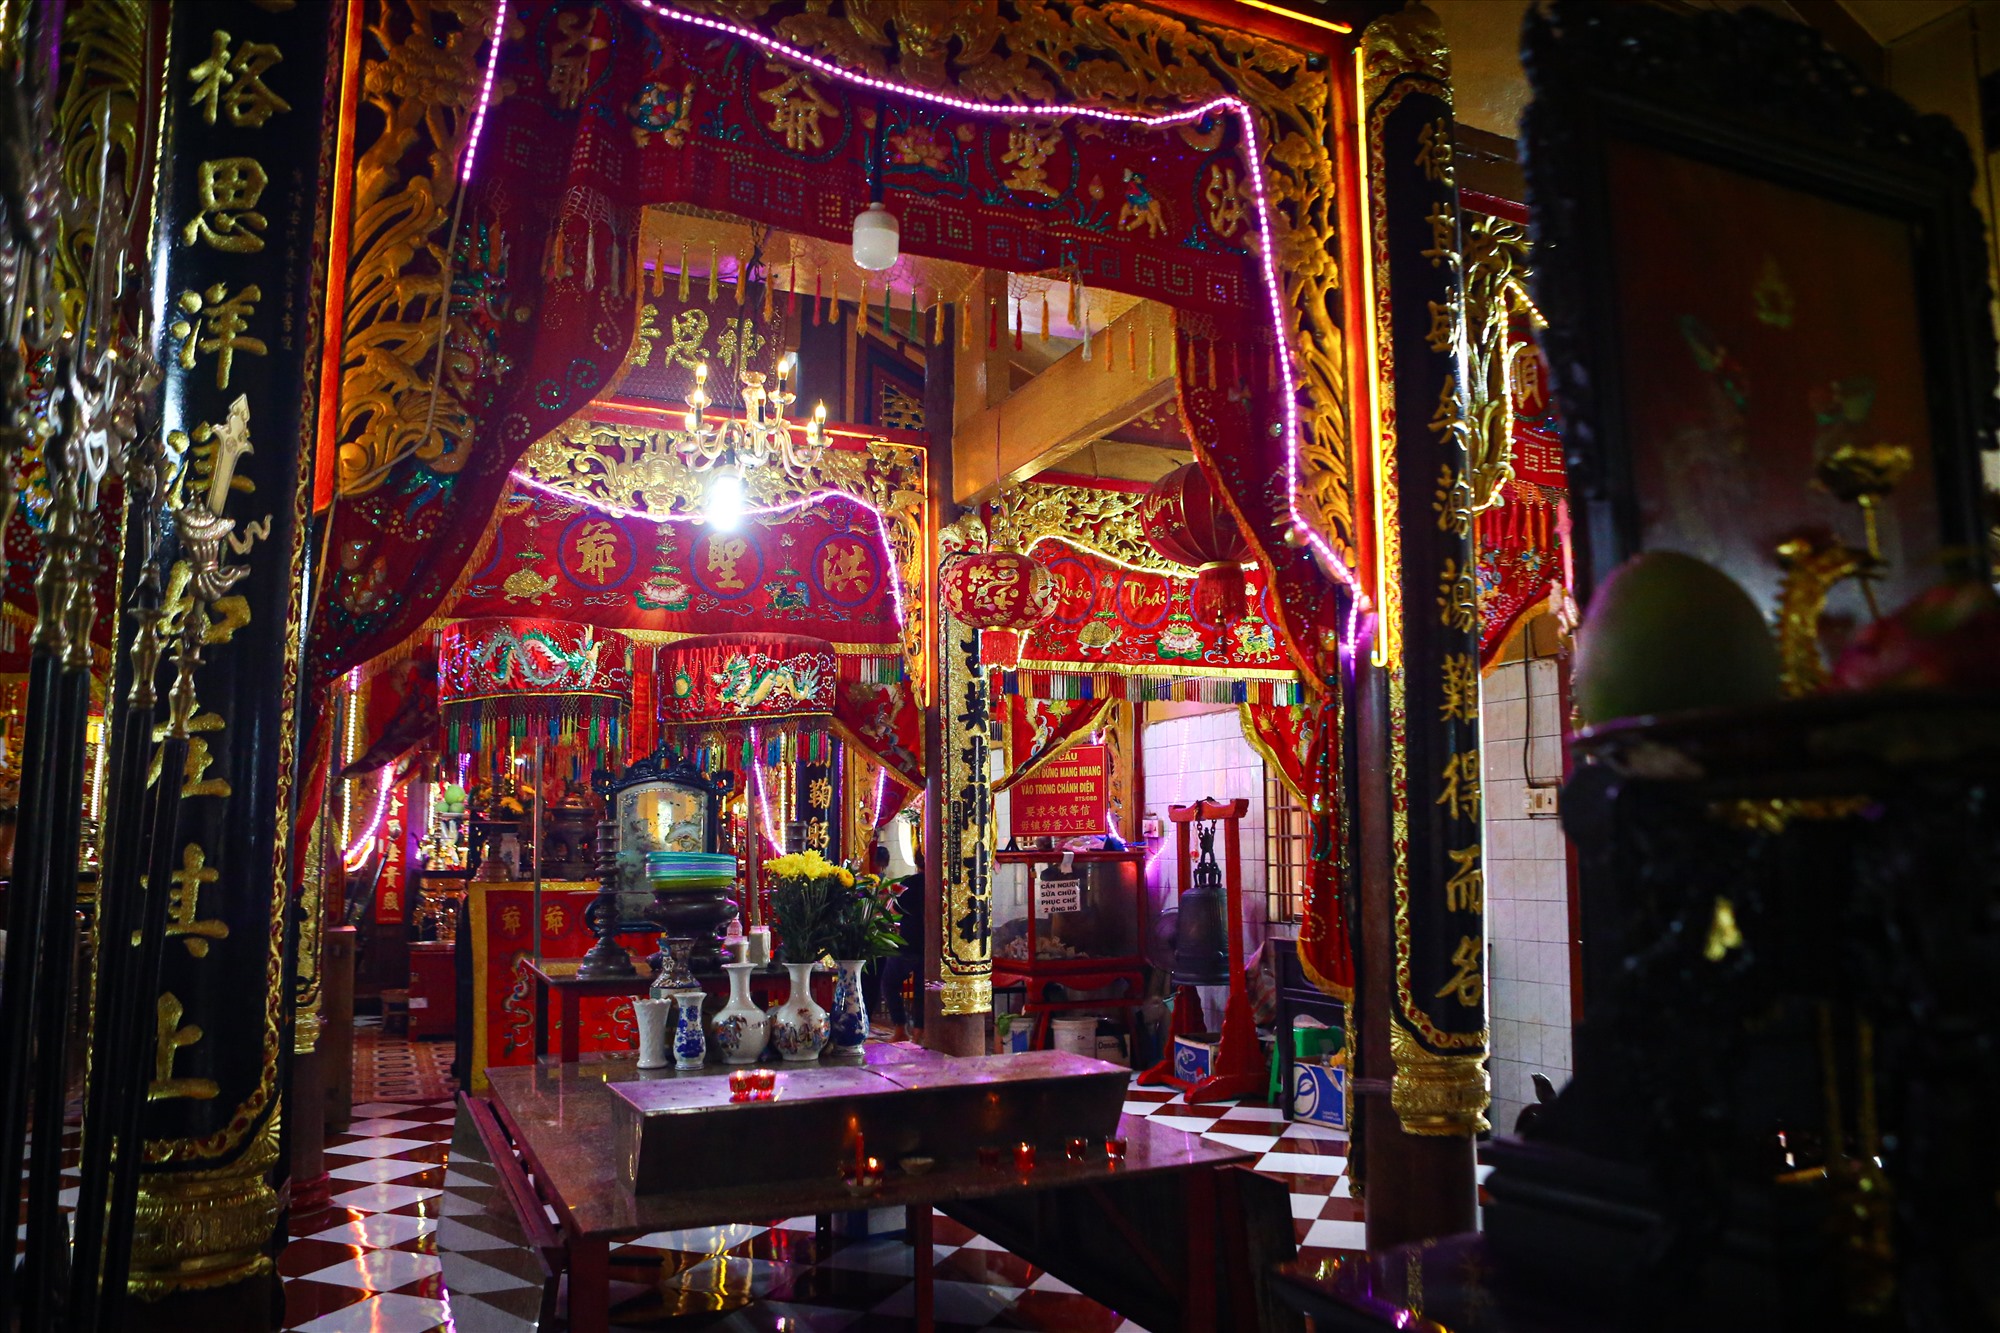 Chánh điện đình Bình Đông dù được xây lại, vẫn giữ nét kiến trúc truyền thống với các gian thờ, hoành phi, câu đối… sơn son thếp vàng.